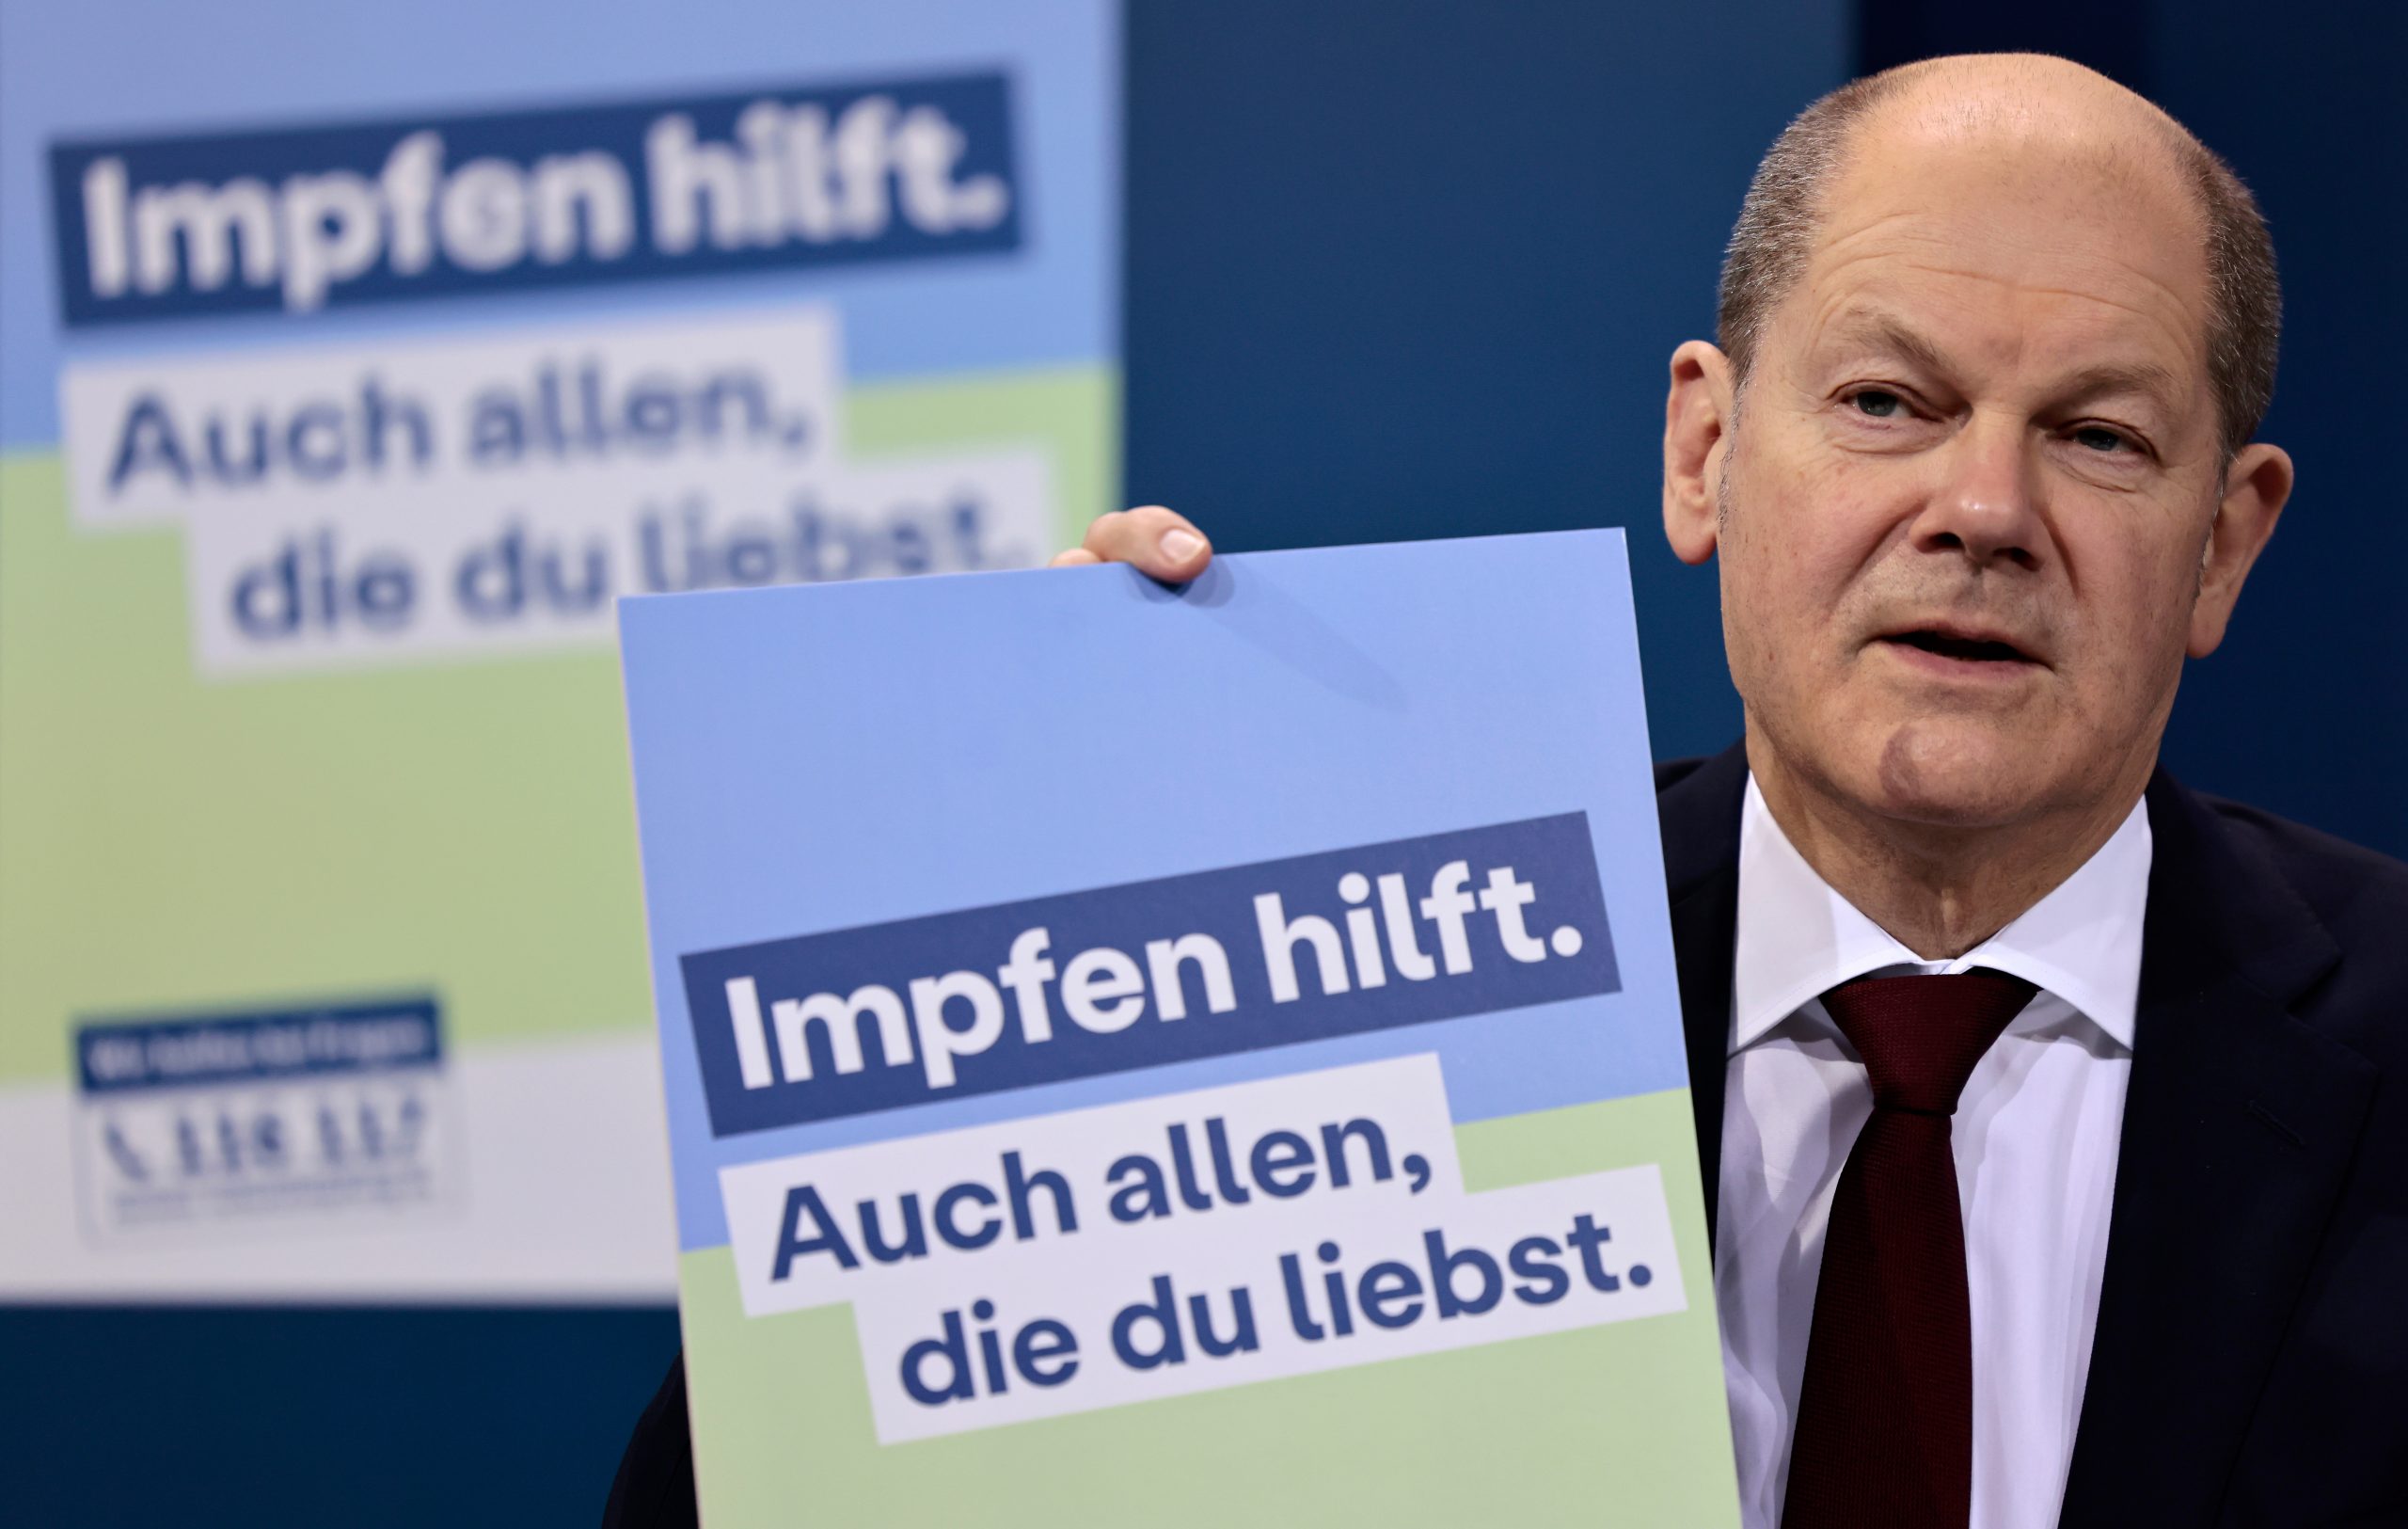 Bundeskanzler Olaf Scholz (SPD) präsentiert ein Plakat für eine neue Impfkampagne